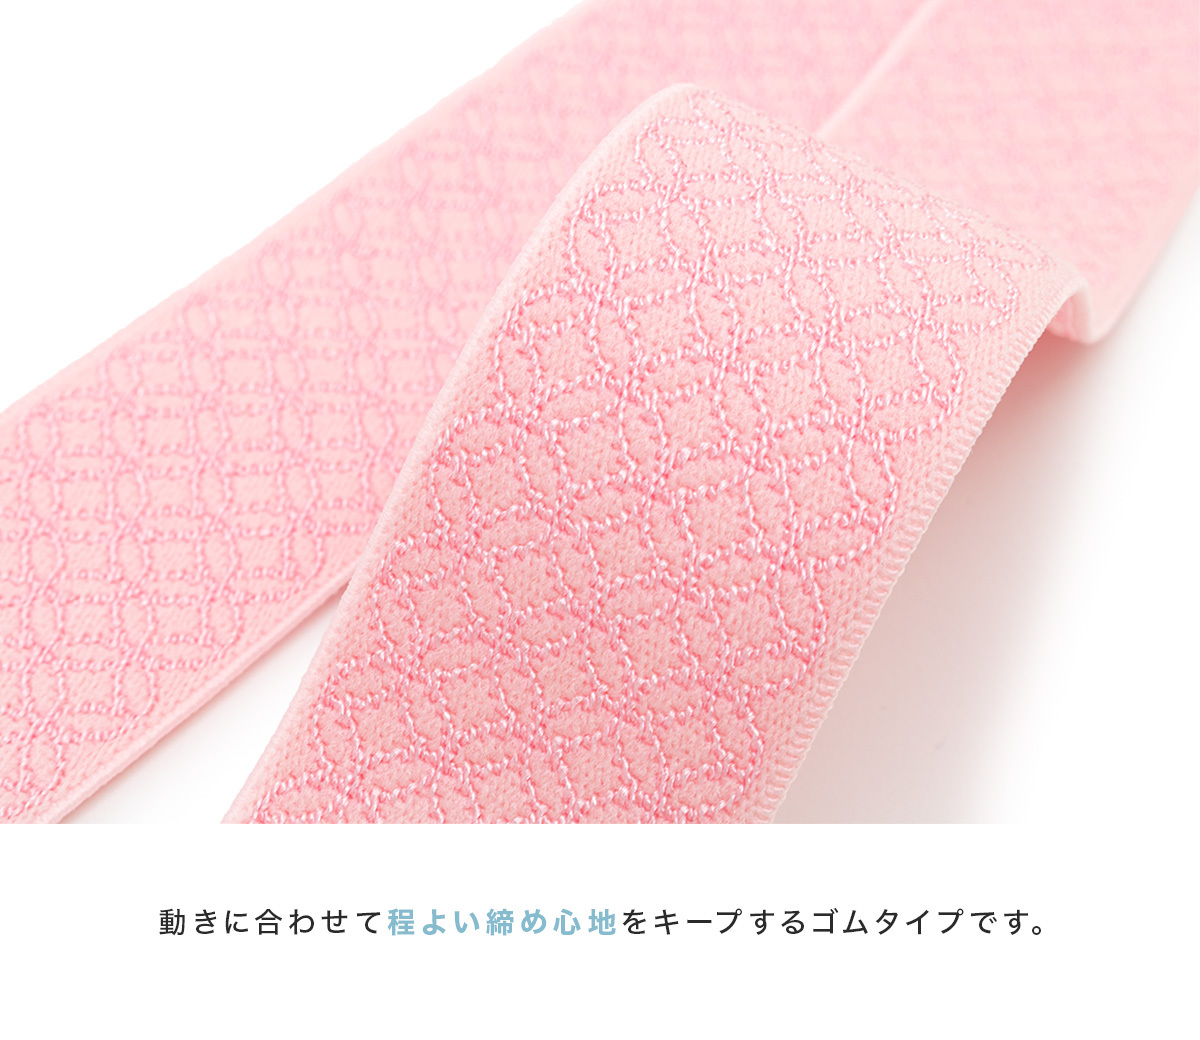  кимоно талия ремень женский кимоно ремень M L сделано в Японии поясница шнур гардеробные аксессуары аксессуары для кимоно почтовая доставка 